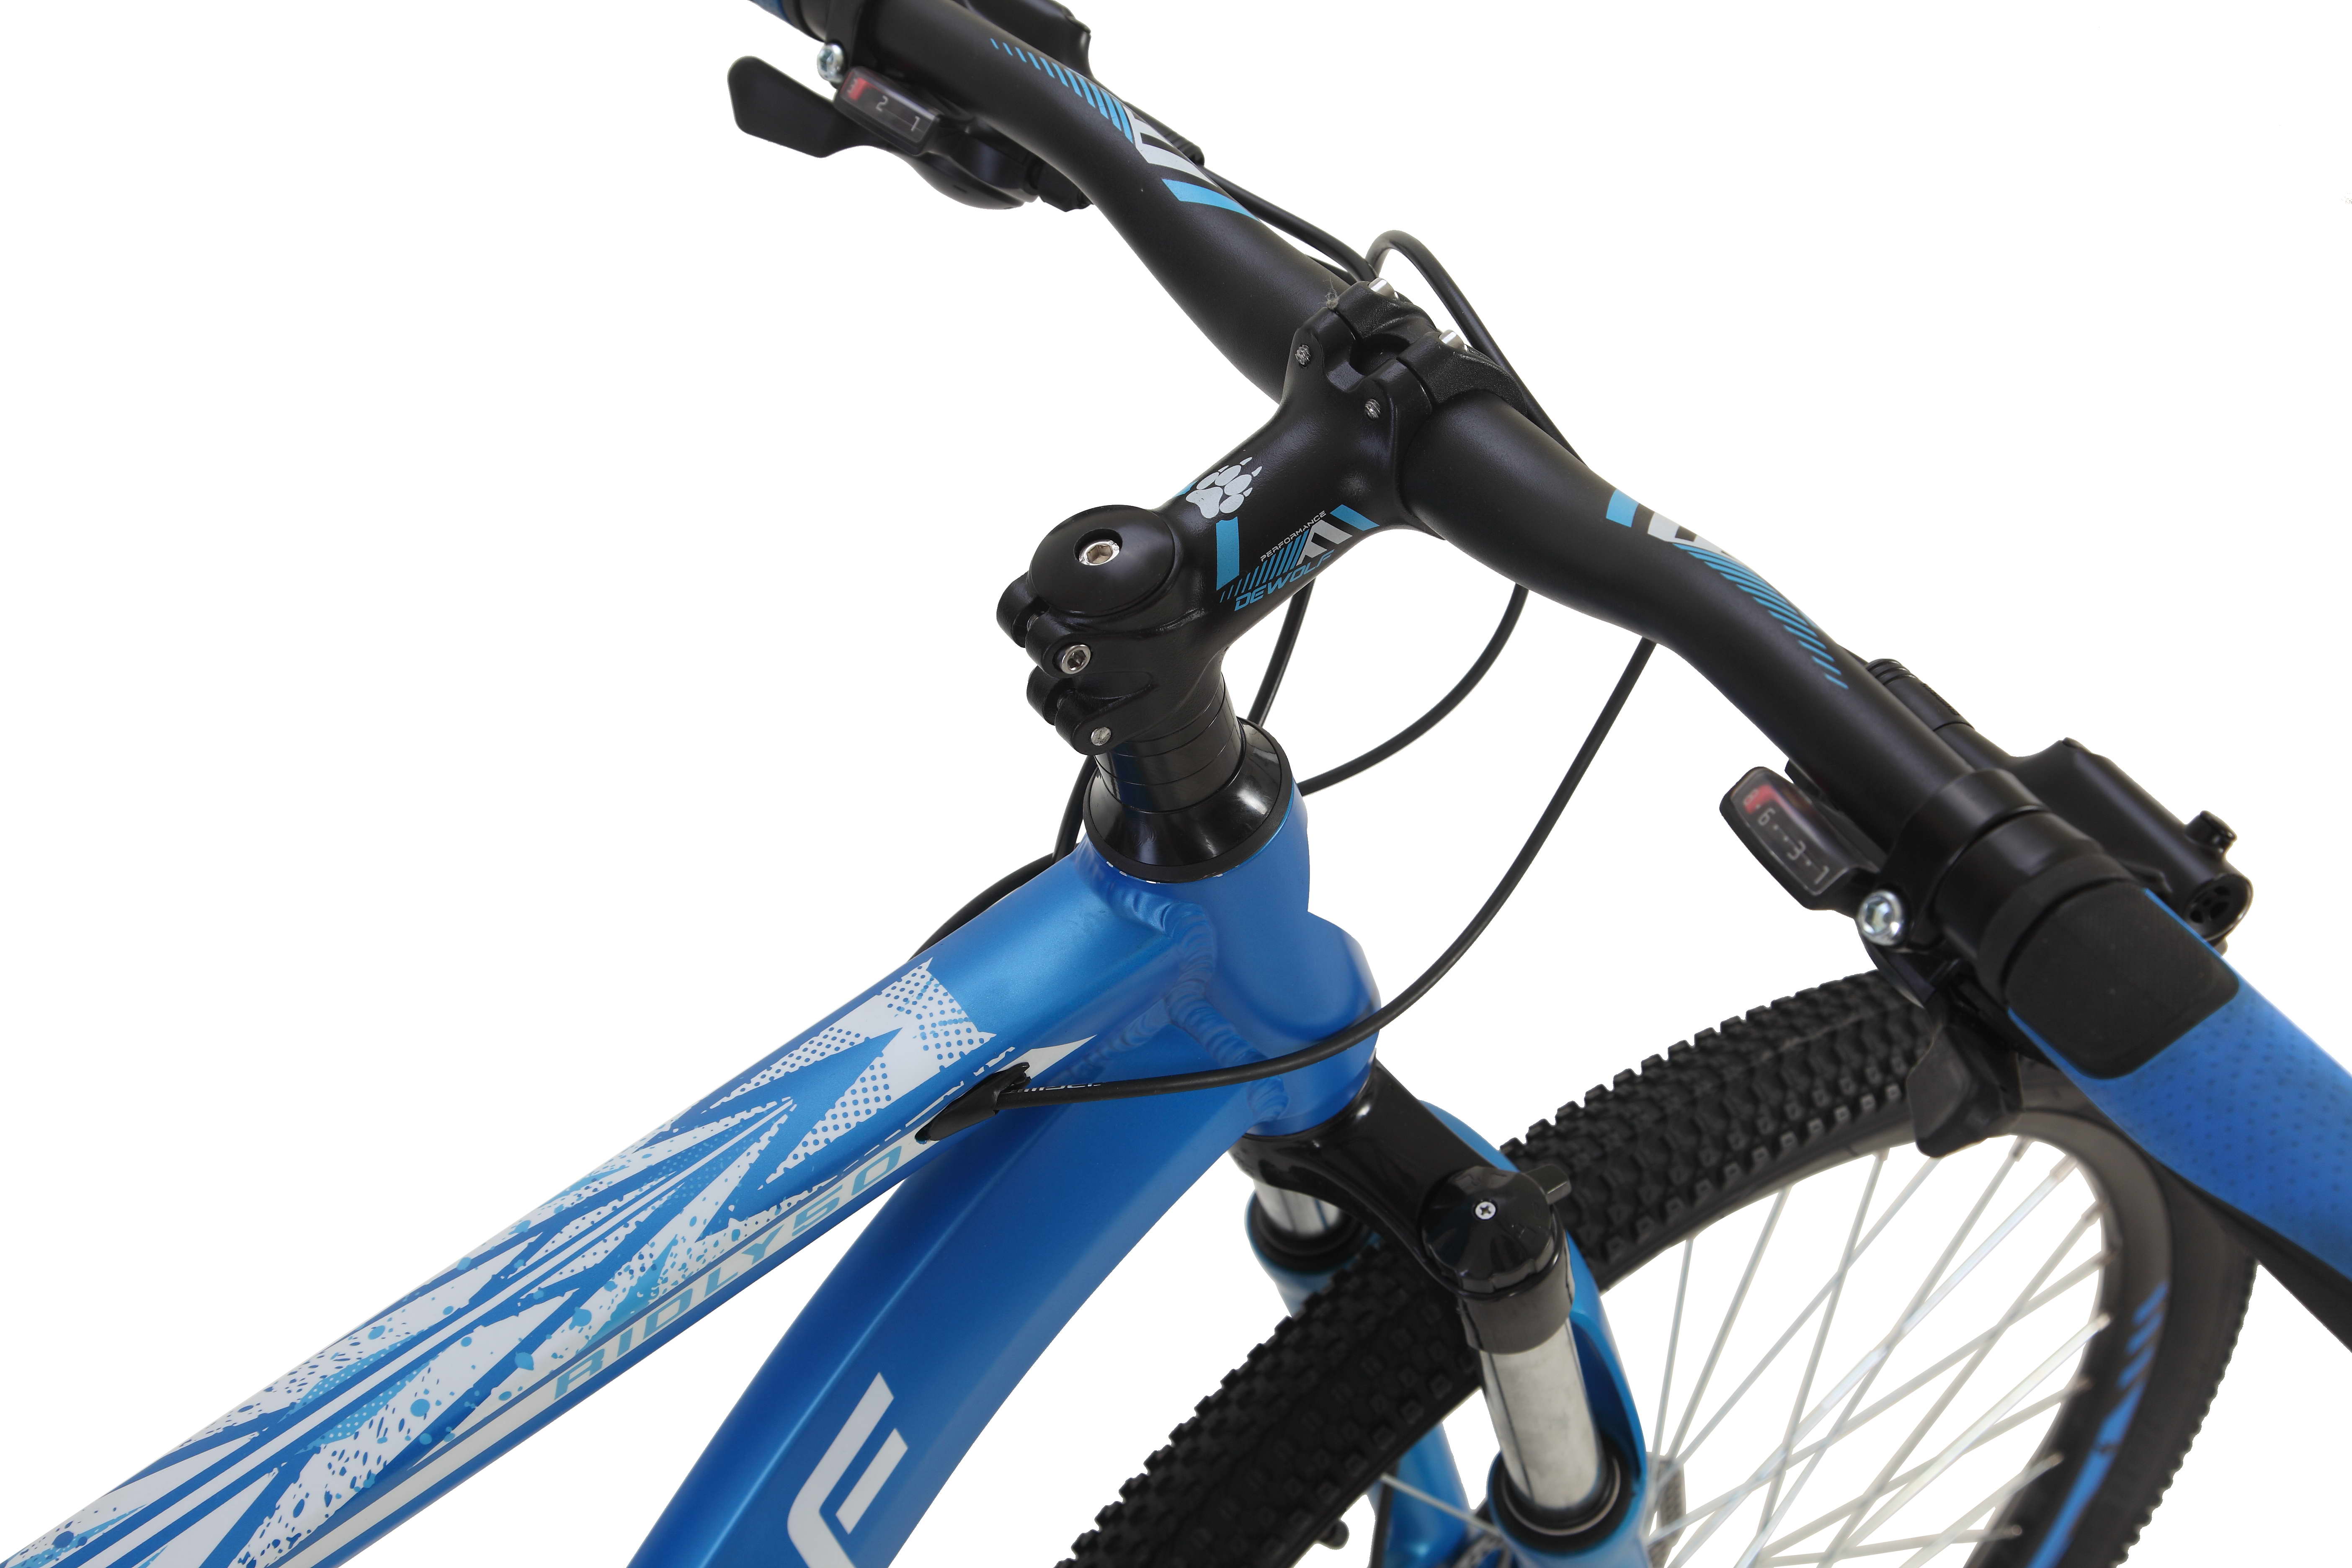 Велосипед Dewolf Ridly 50, размер: 18 жемчужно-синий